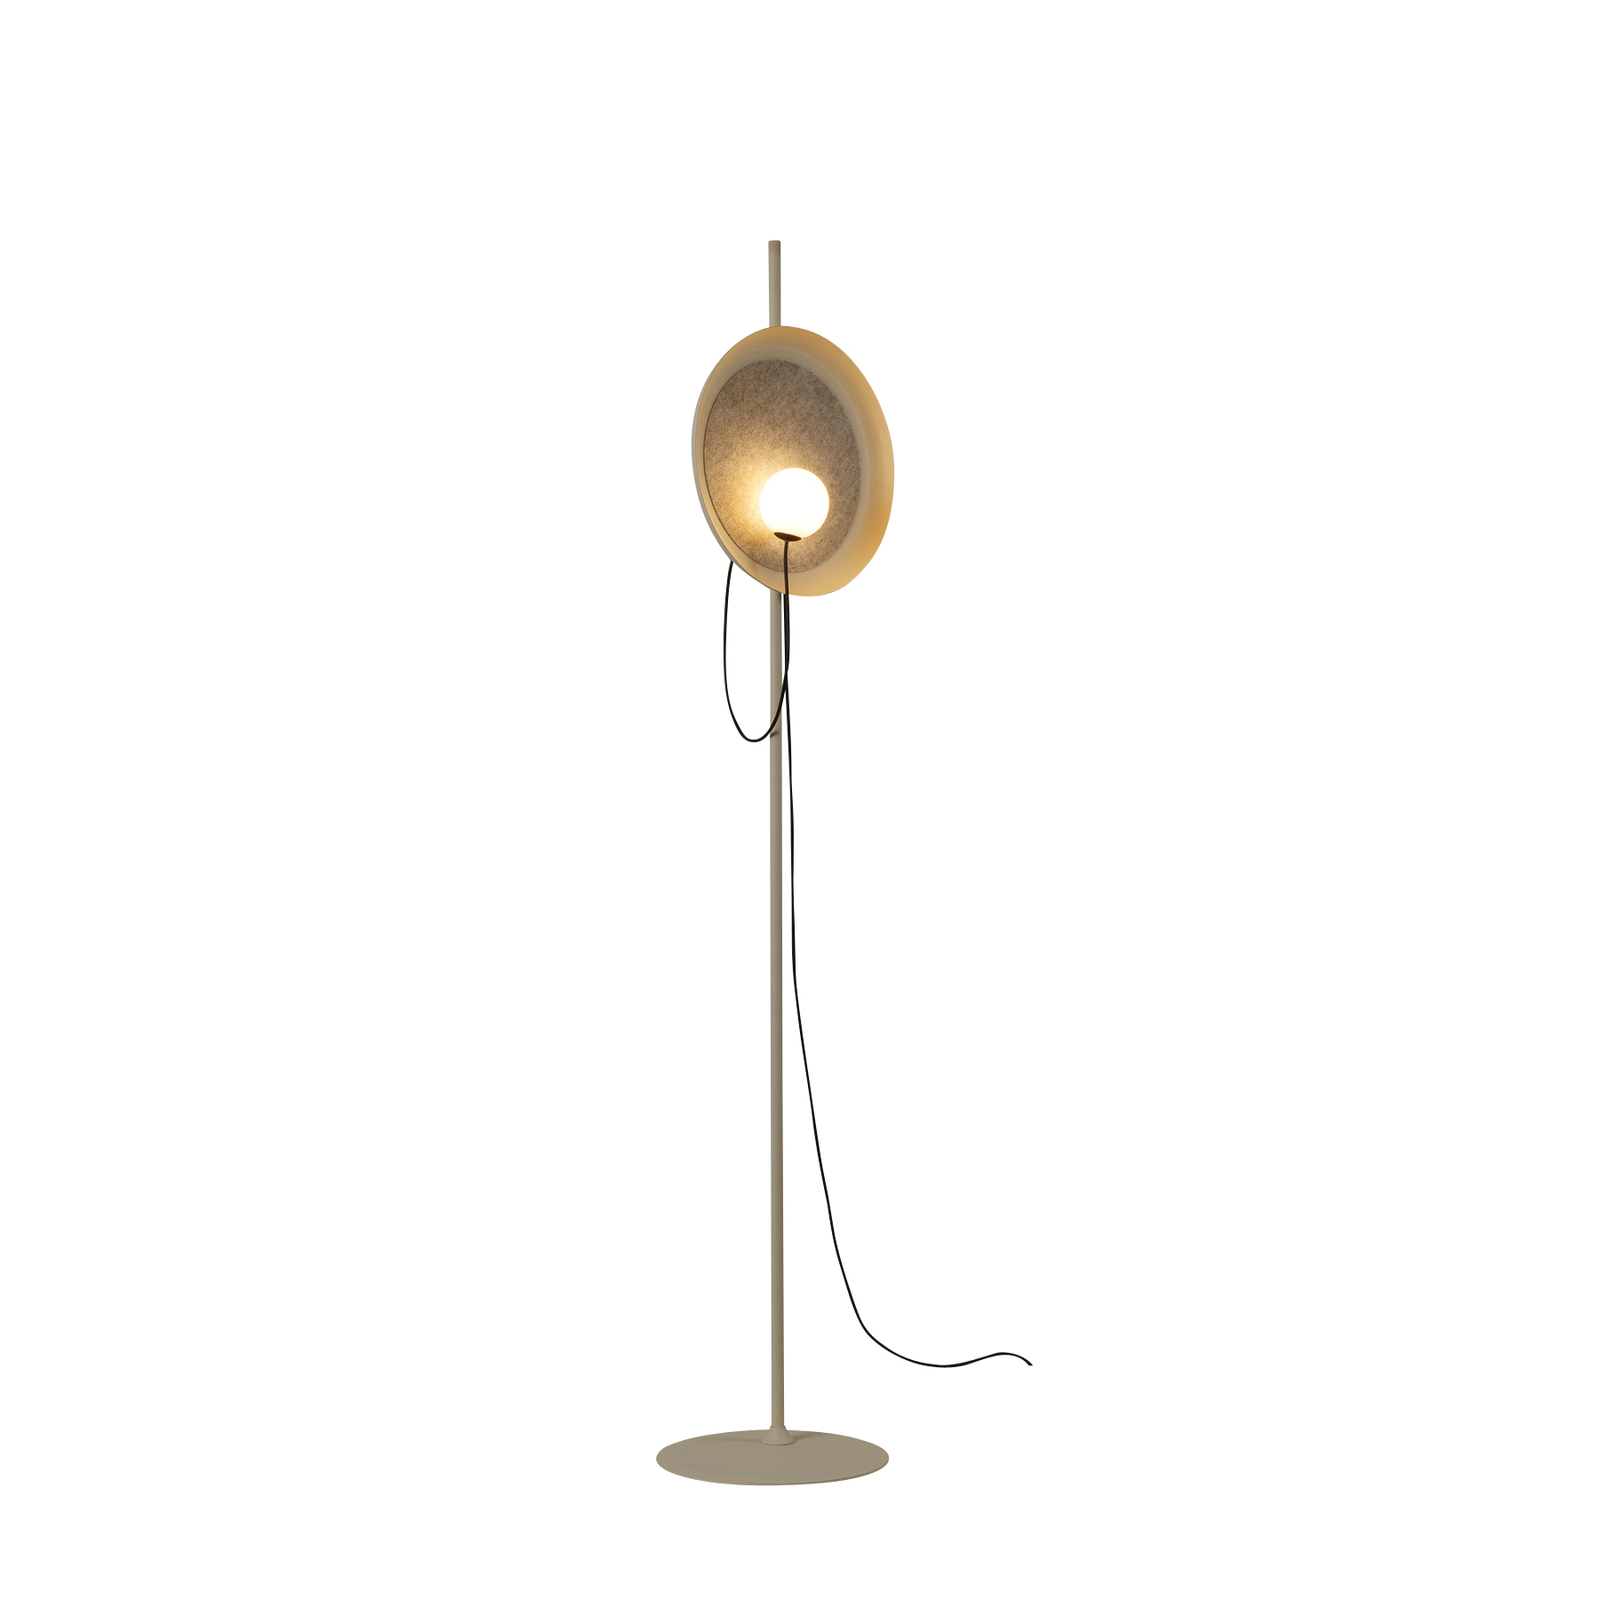 Milan Drátěná stojací lampa Ø 38 cm v barvě norka